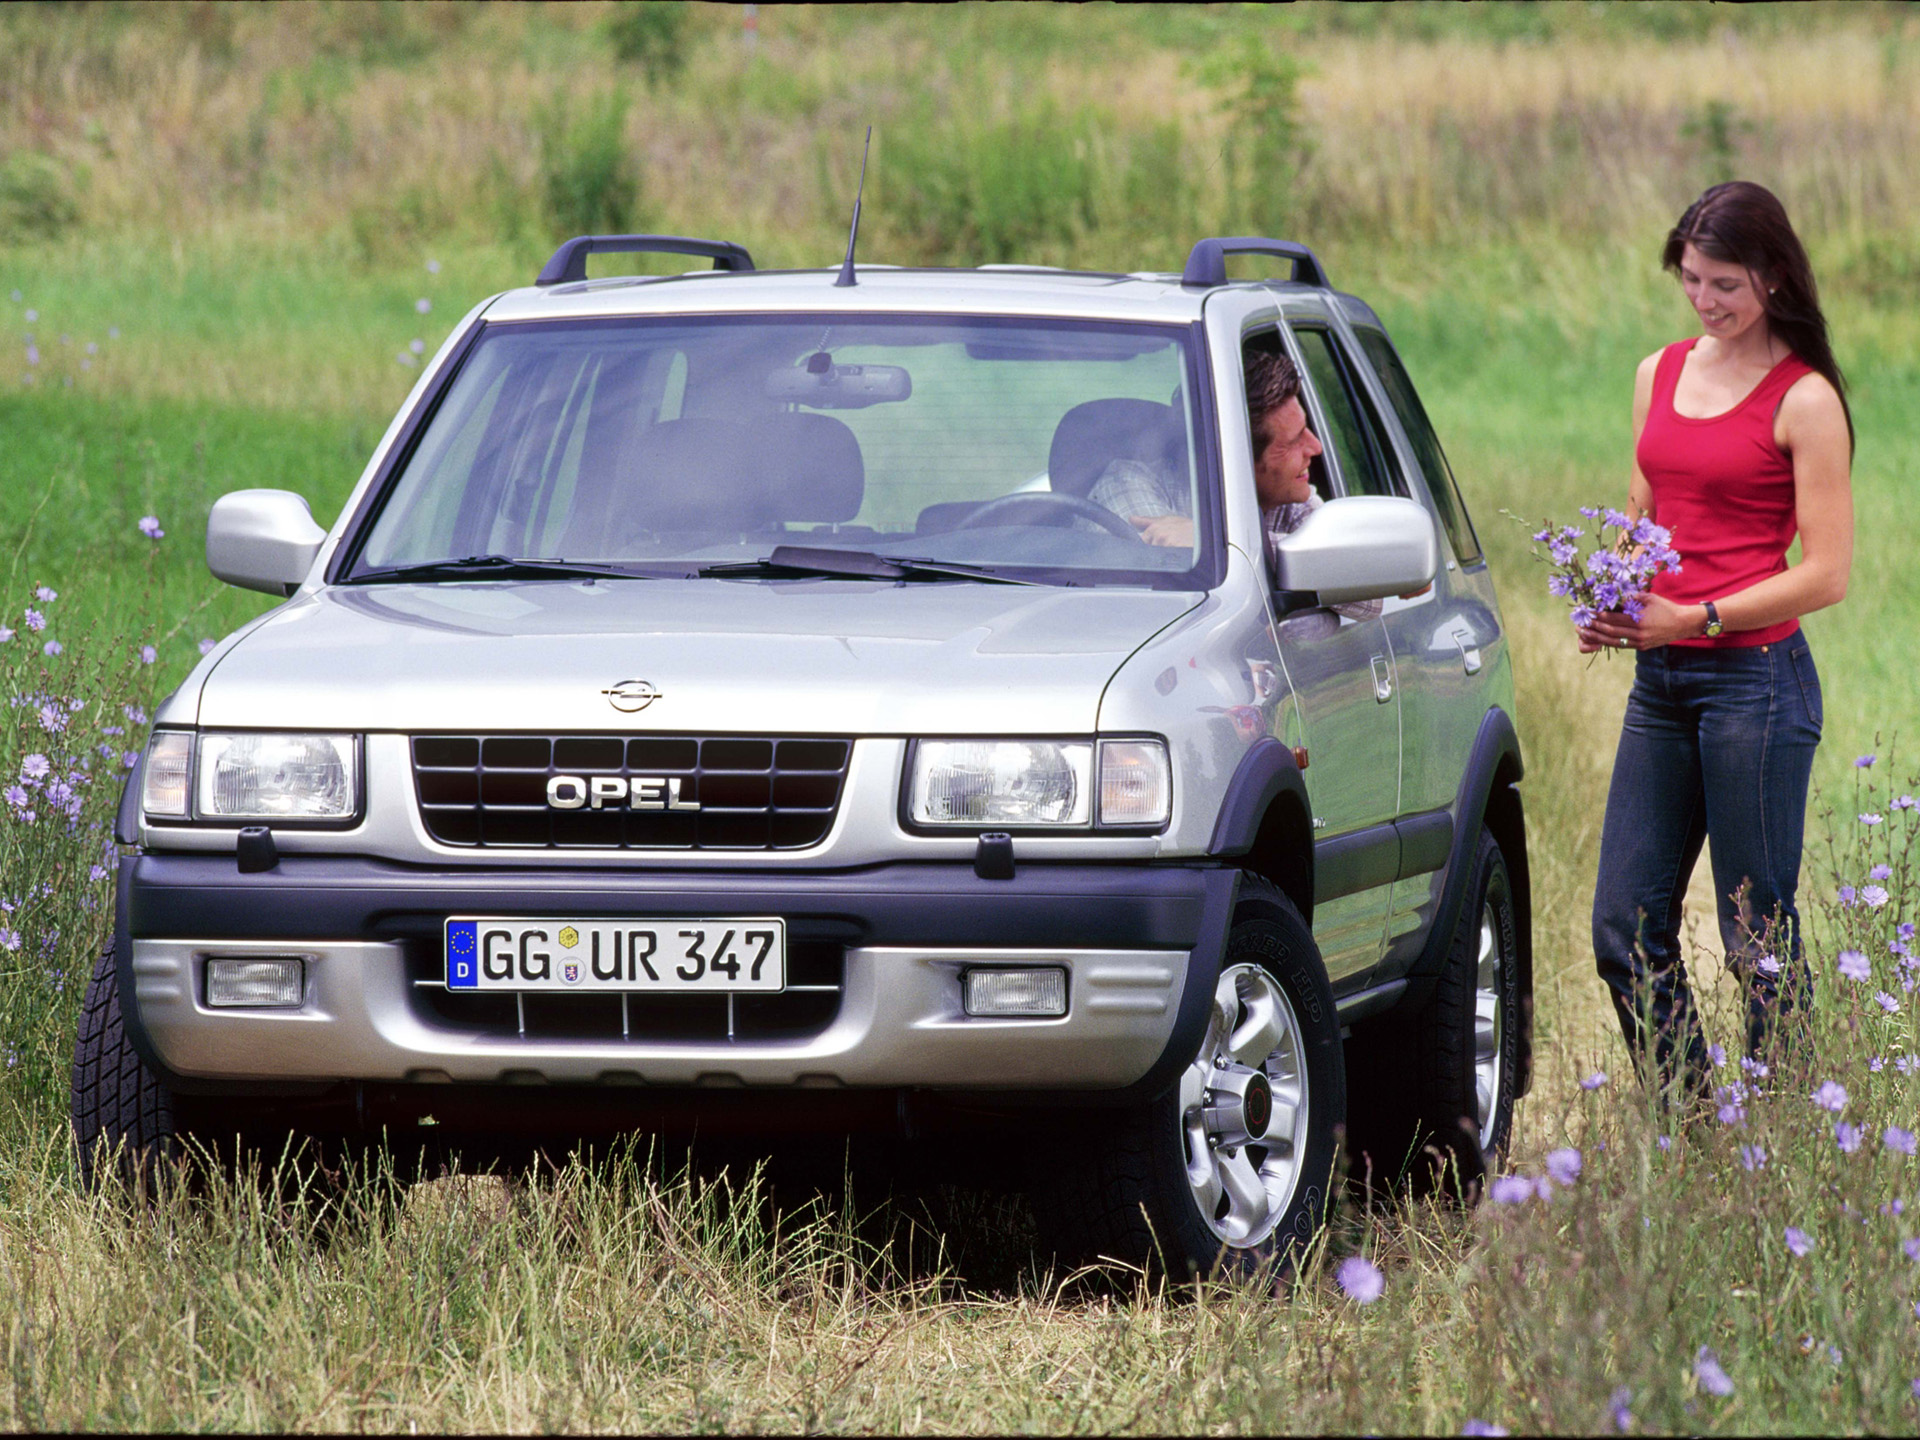 Vous pouvez voter pour cette photo Opel Frontera